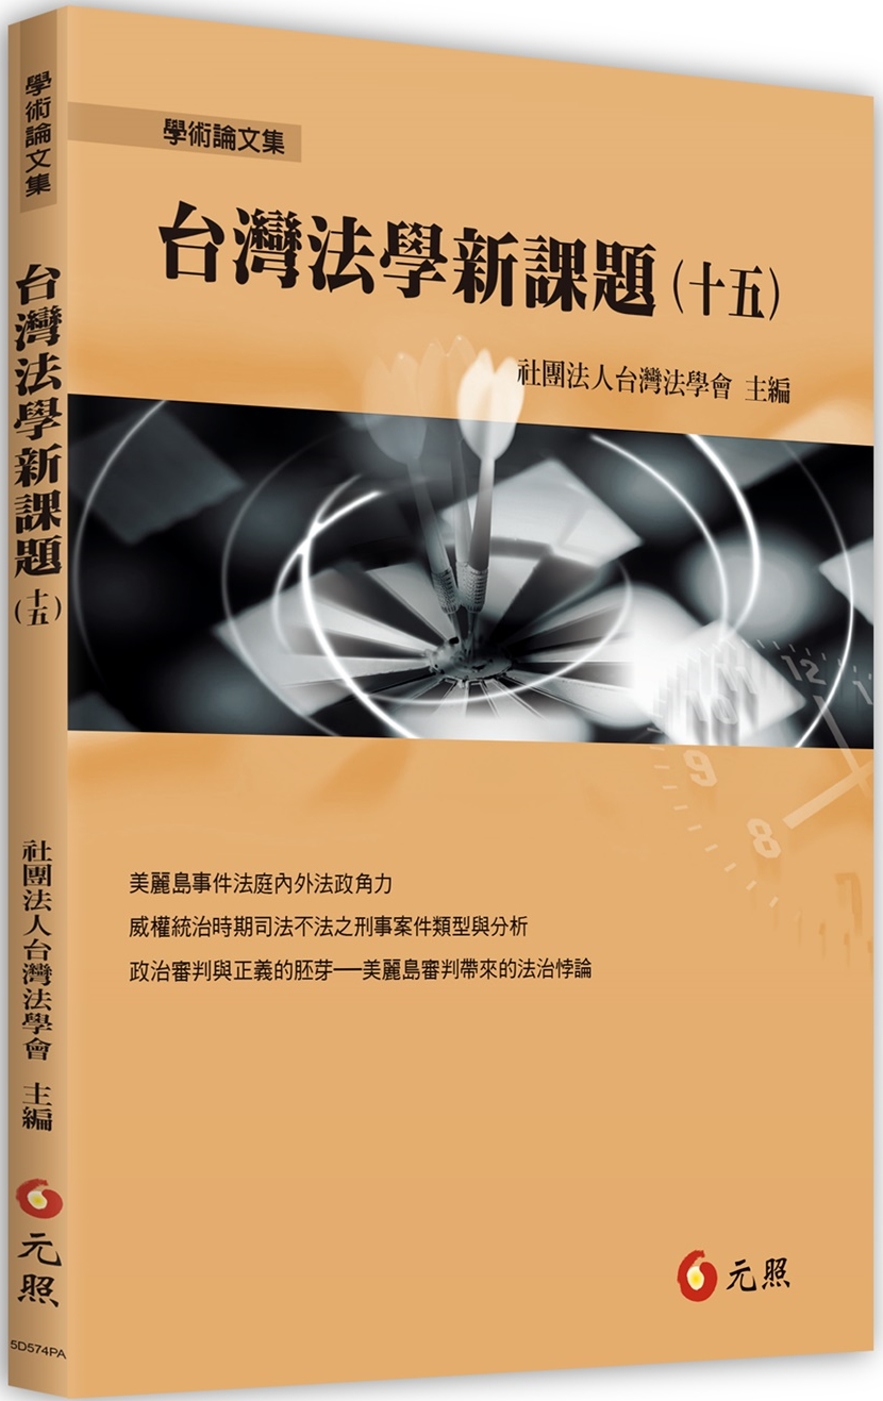 台灣法學新課題(十五)